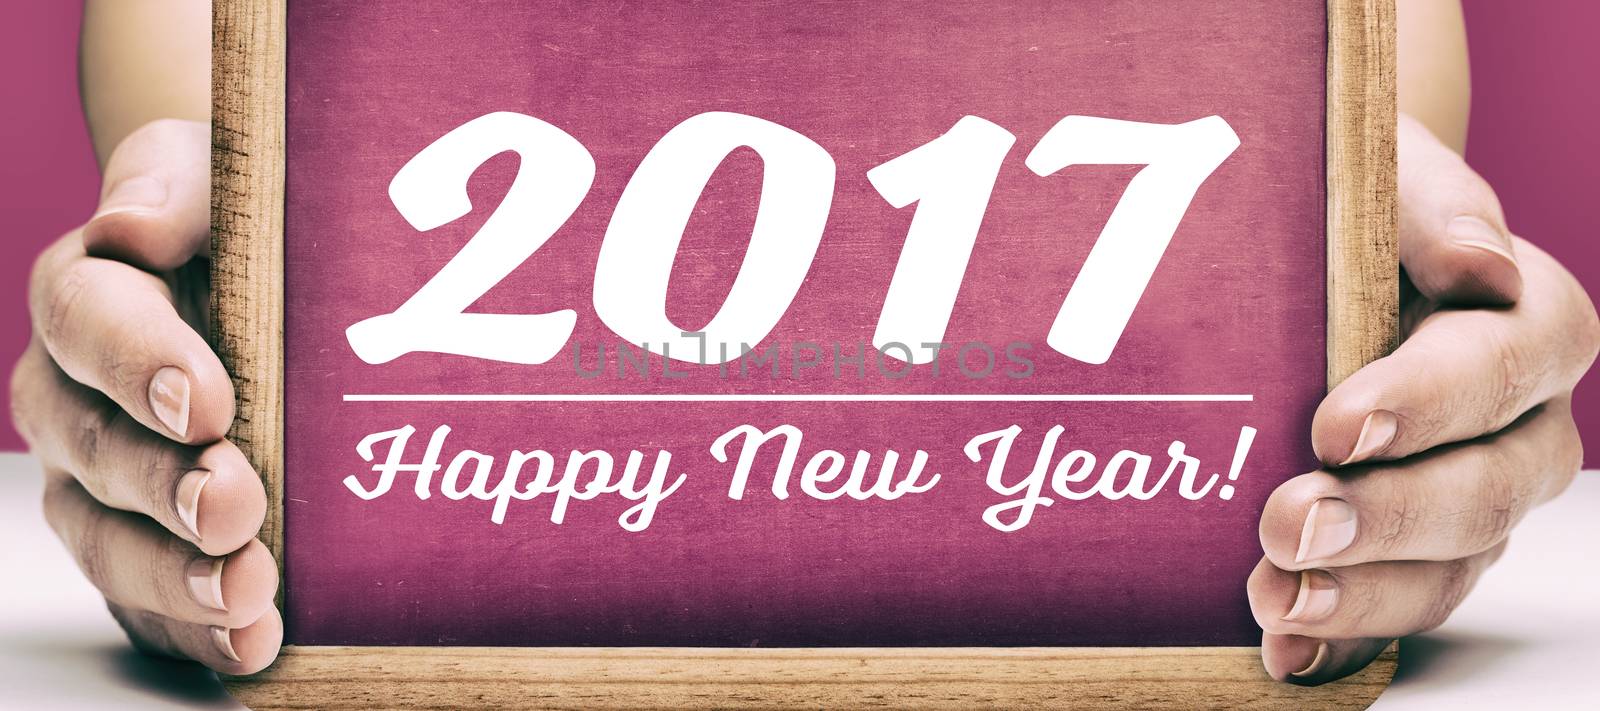 Slate with happy new year text by Wavebreakmedia